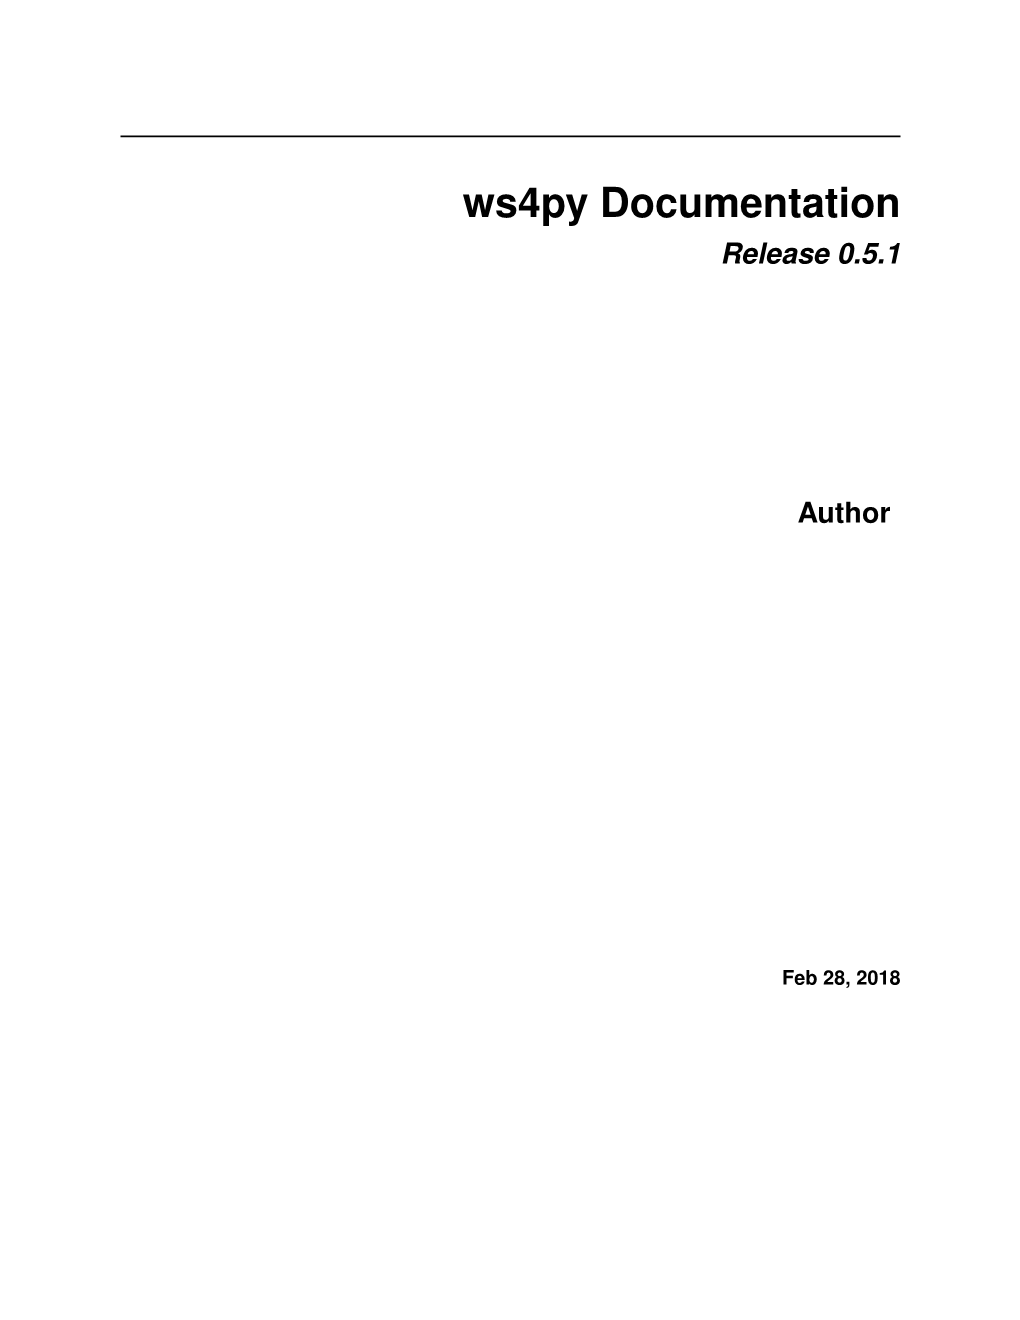 Ws4py Documentation Release 0.5.1